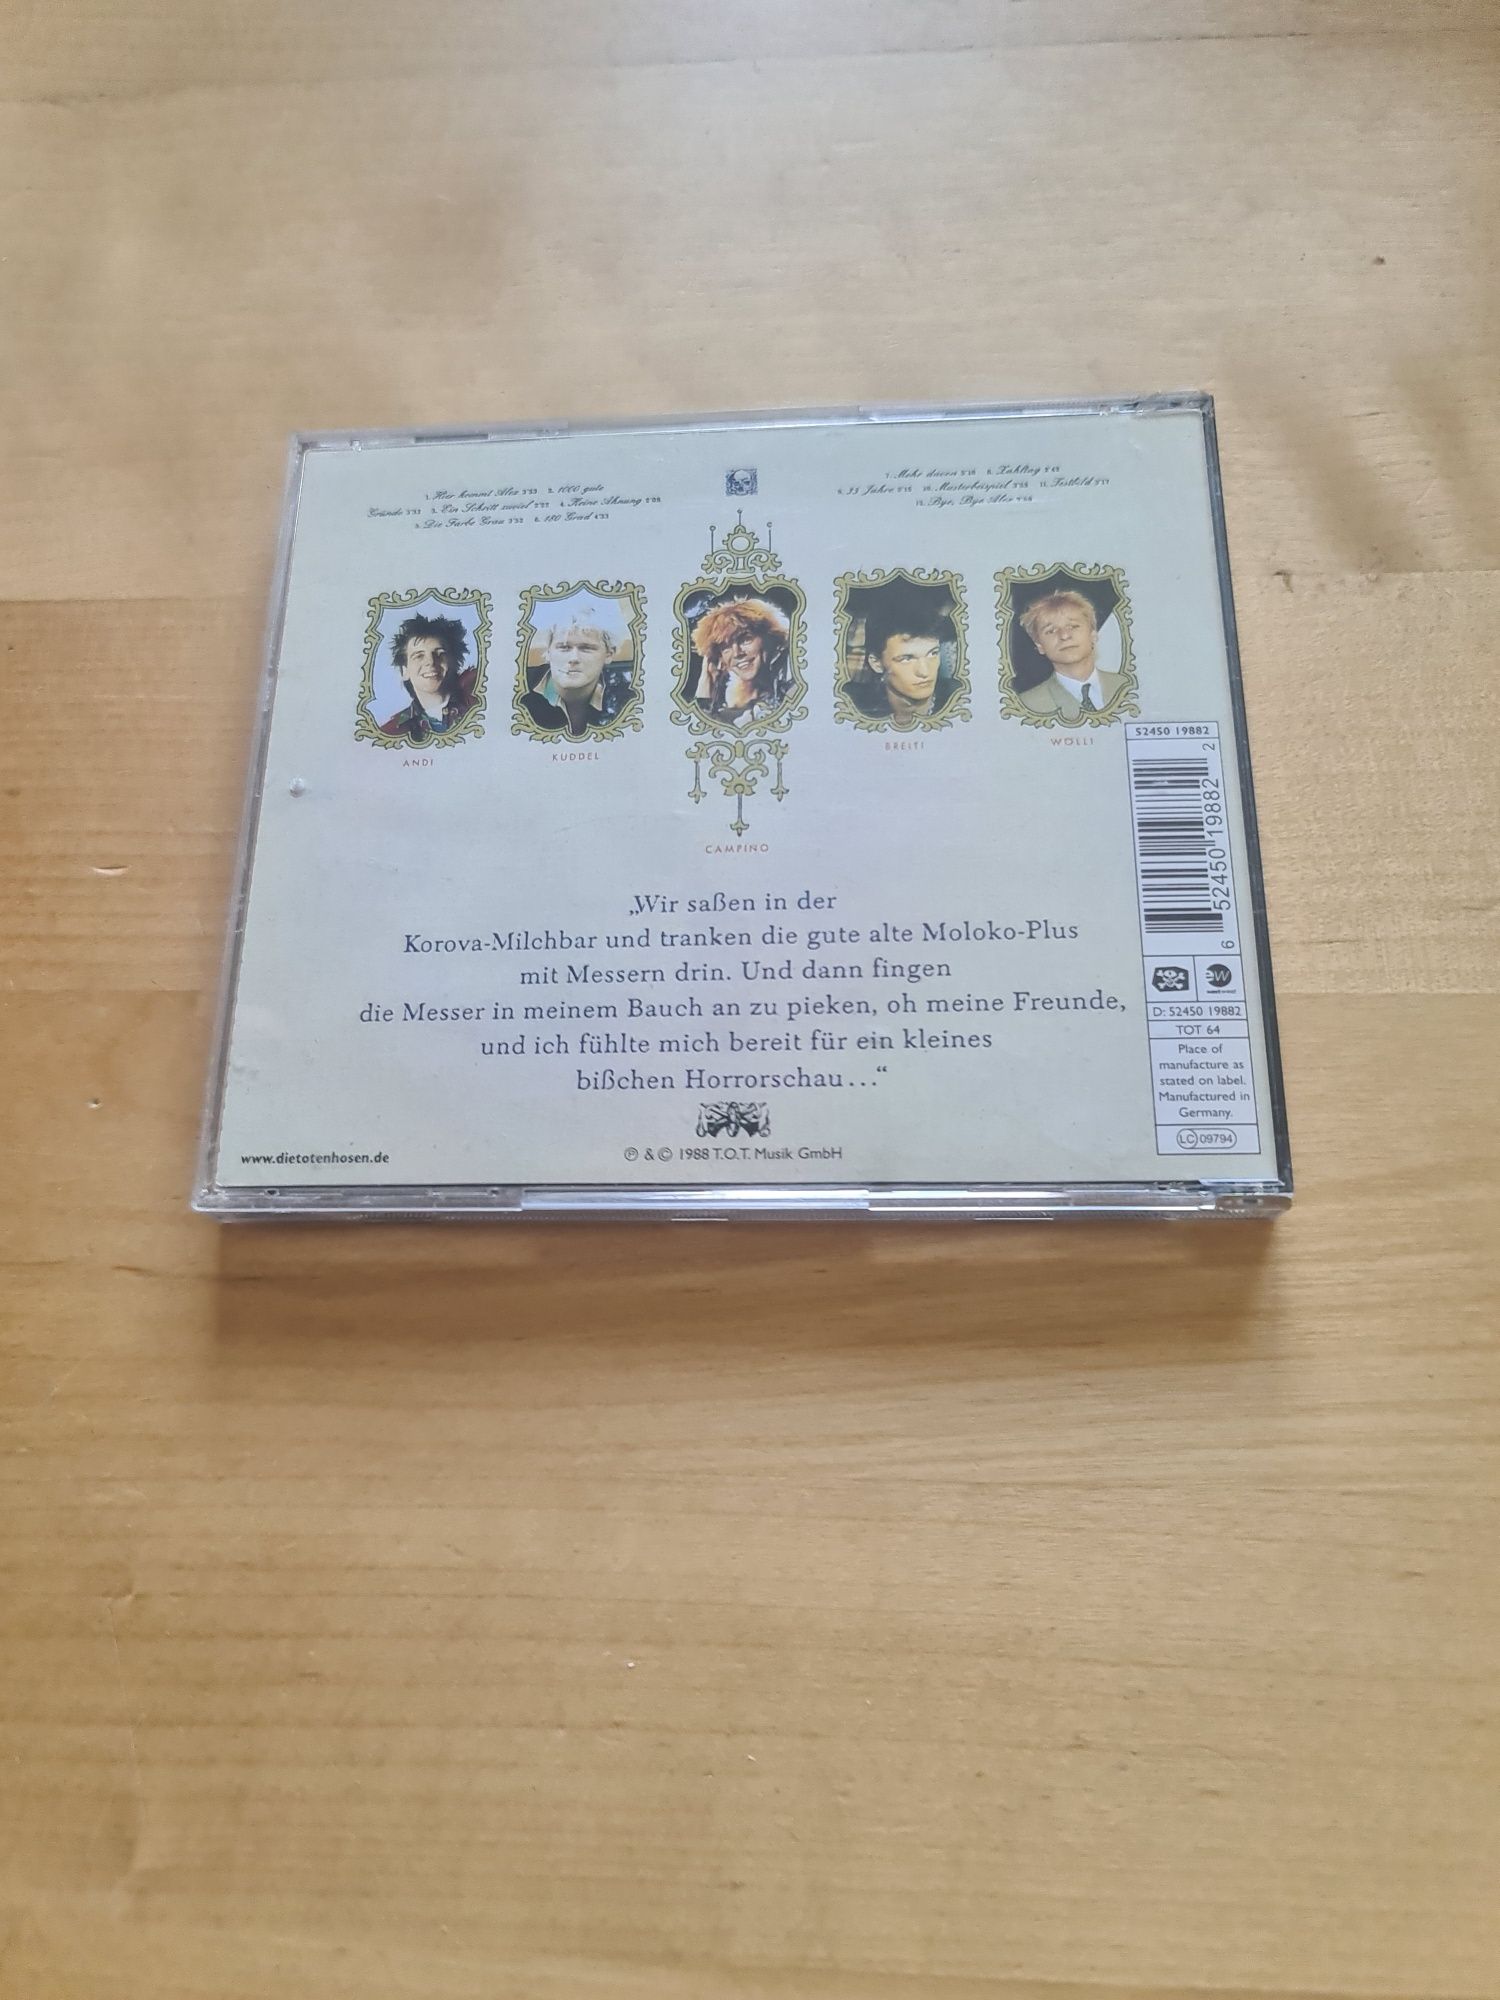 Płyta CD Die Toten Hosen - Ein Kleines Bisschen Horrorschau